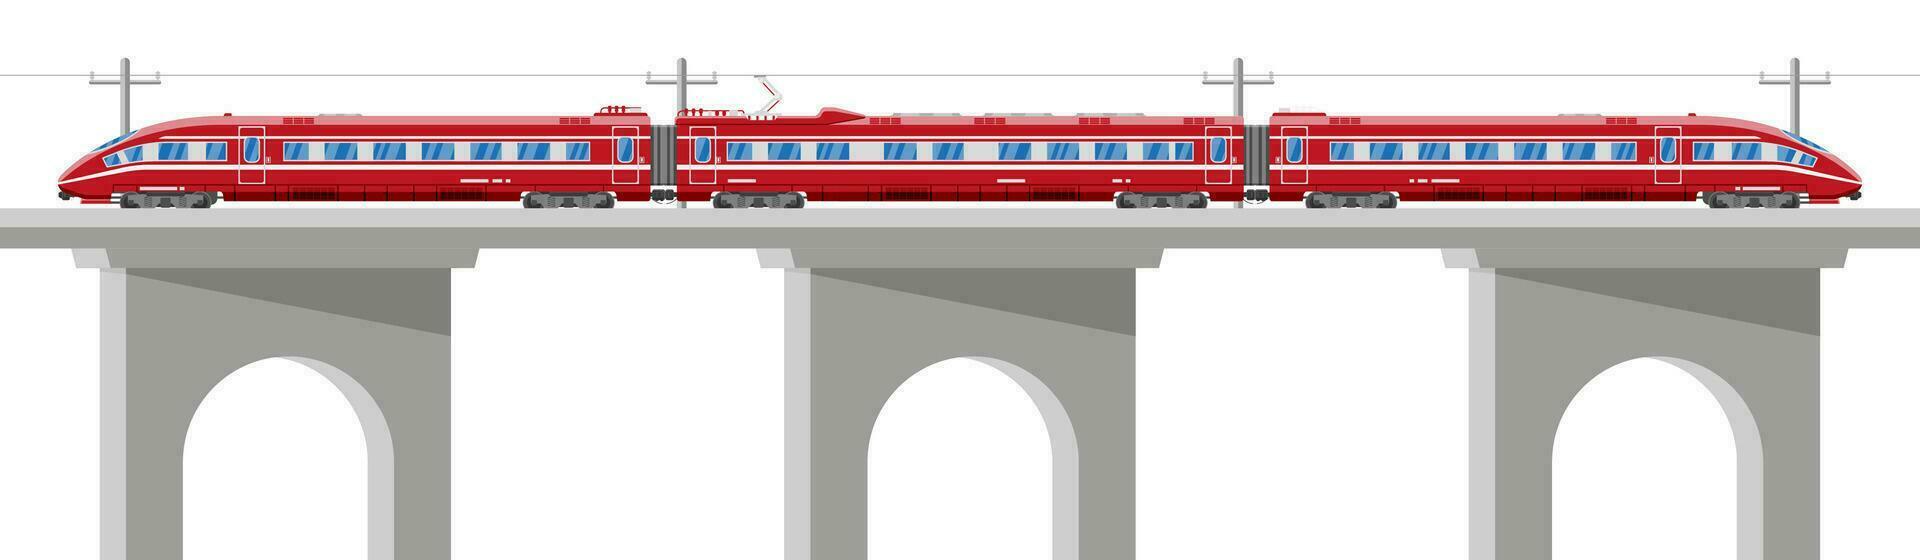 skytrain isolerat på vit. super strömlinjeformat tåg. passagerare uttrycka järnväg lokomotiv. monorail järnväg offentlig transport. snabb transport tunnelbana. platt vektor illustration